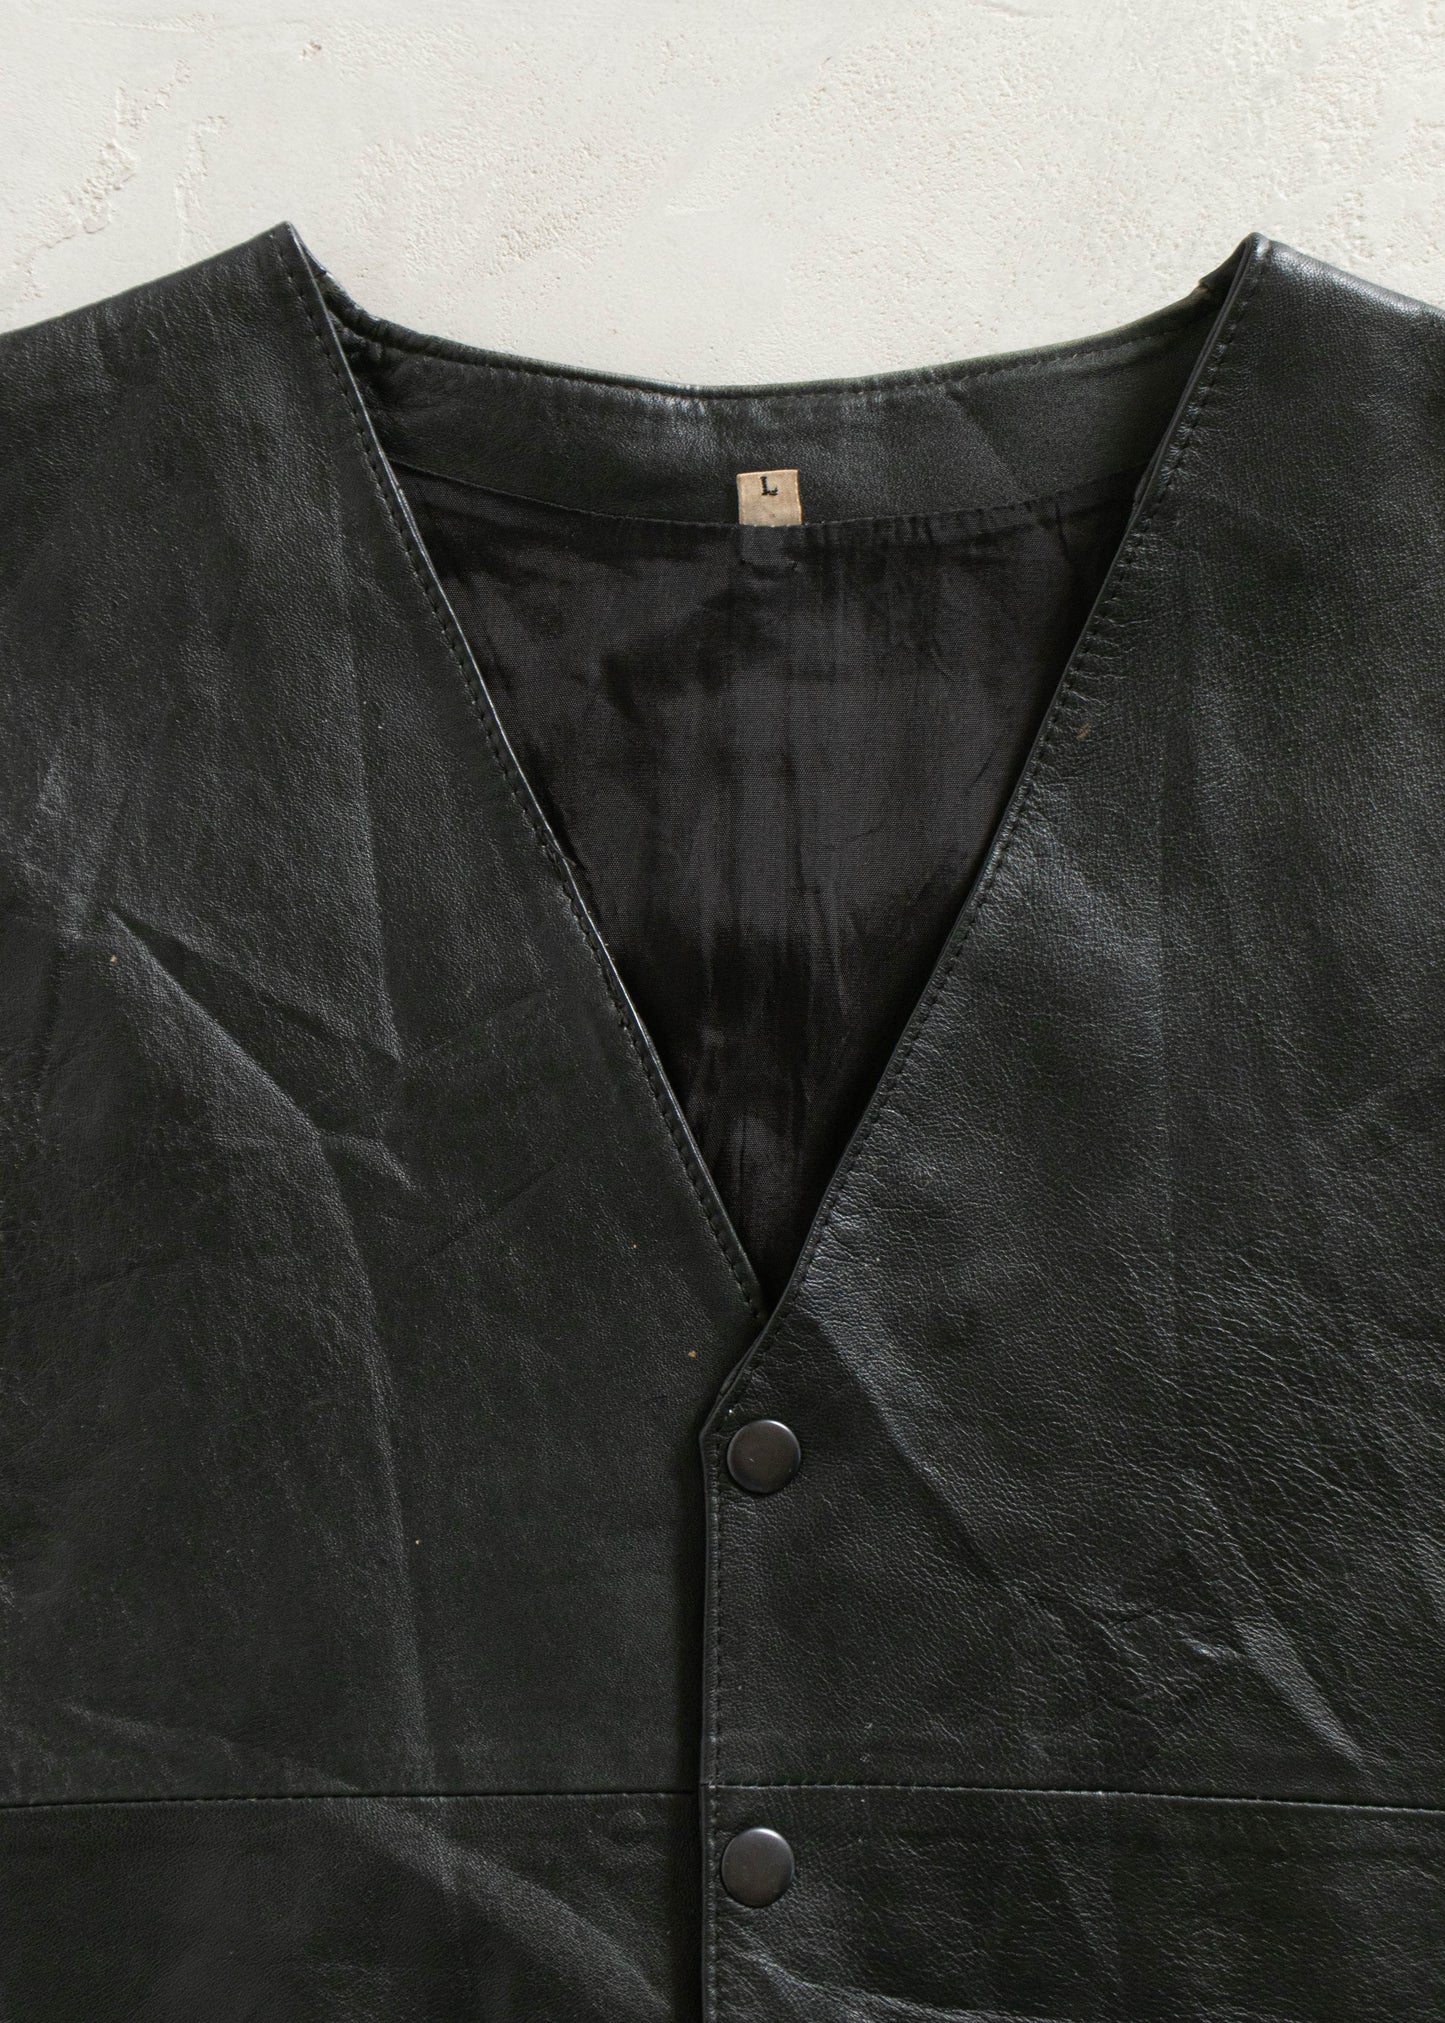 1980s Leather Vest Size Size L/XL